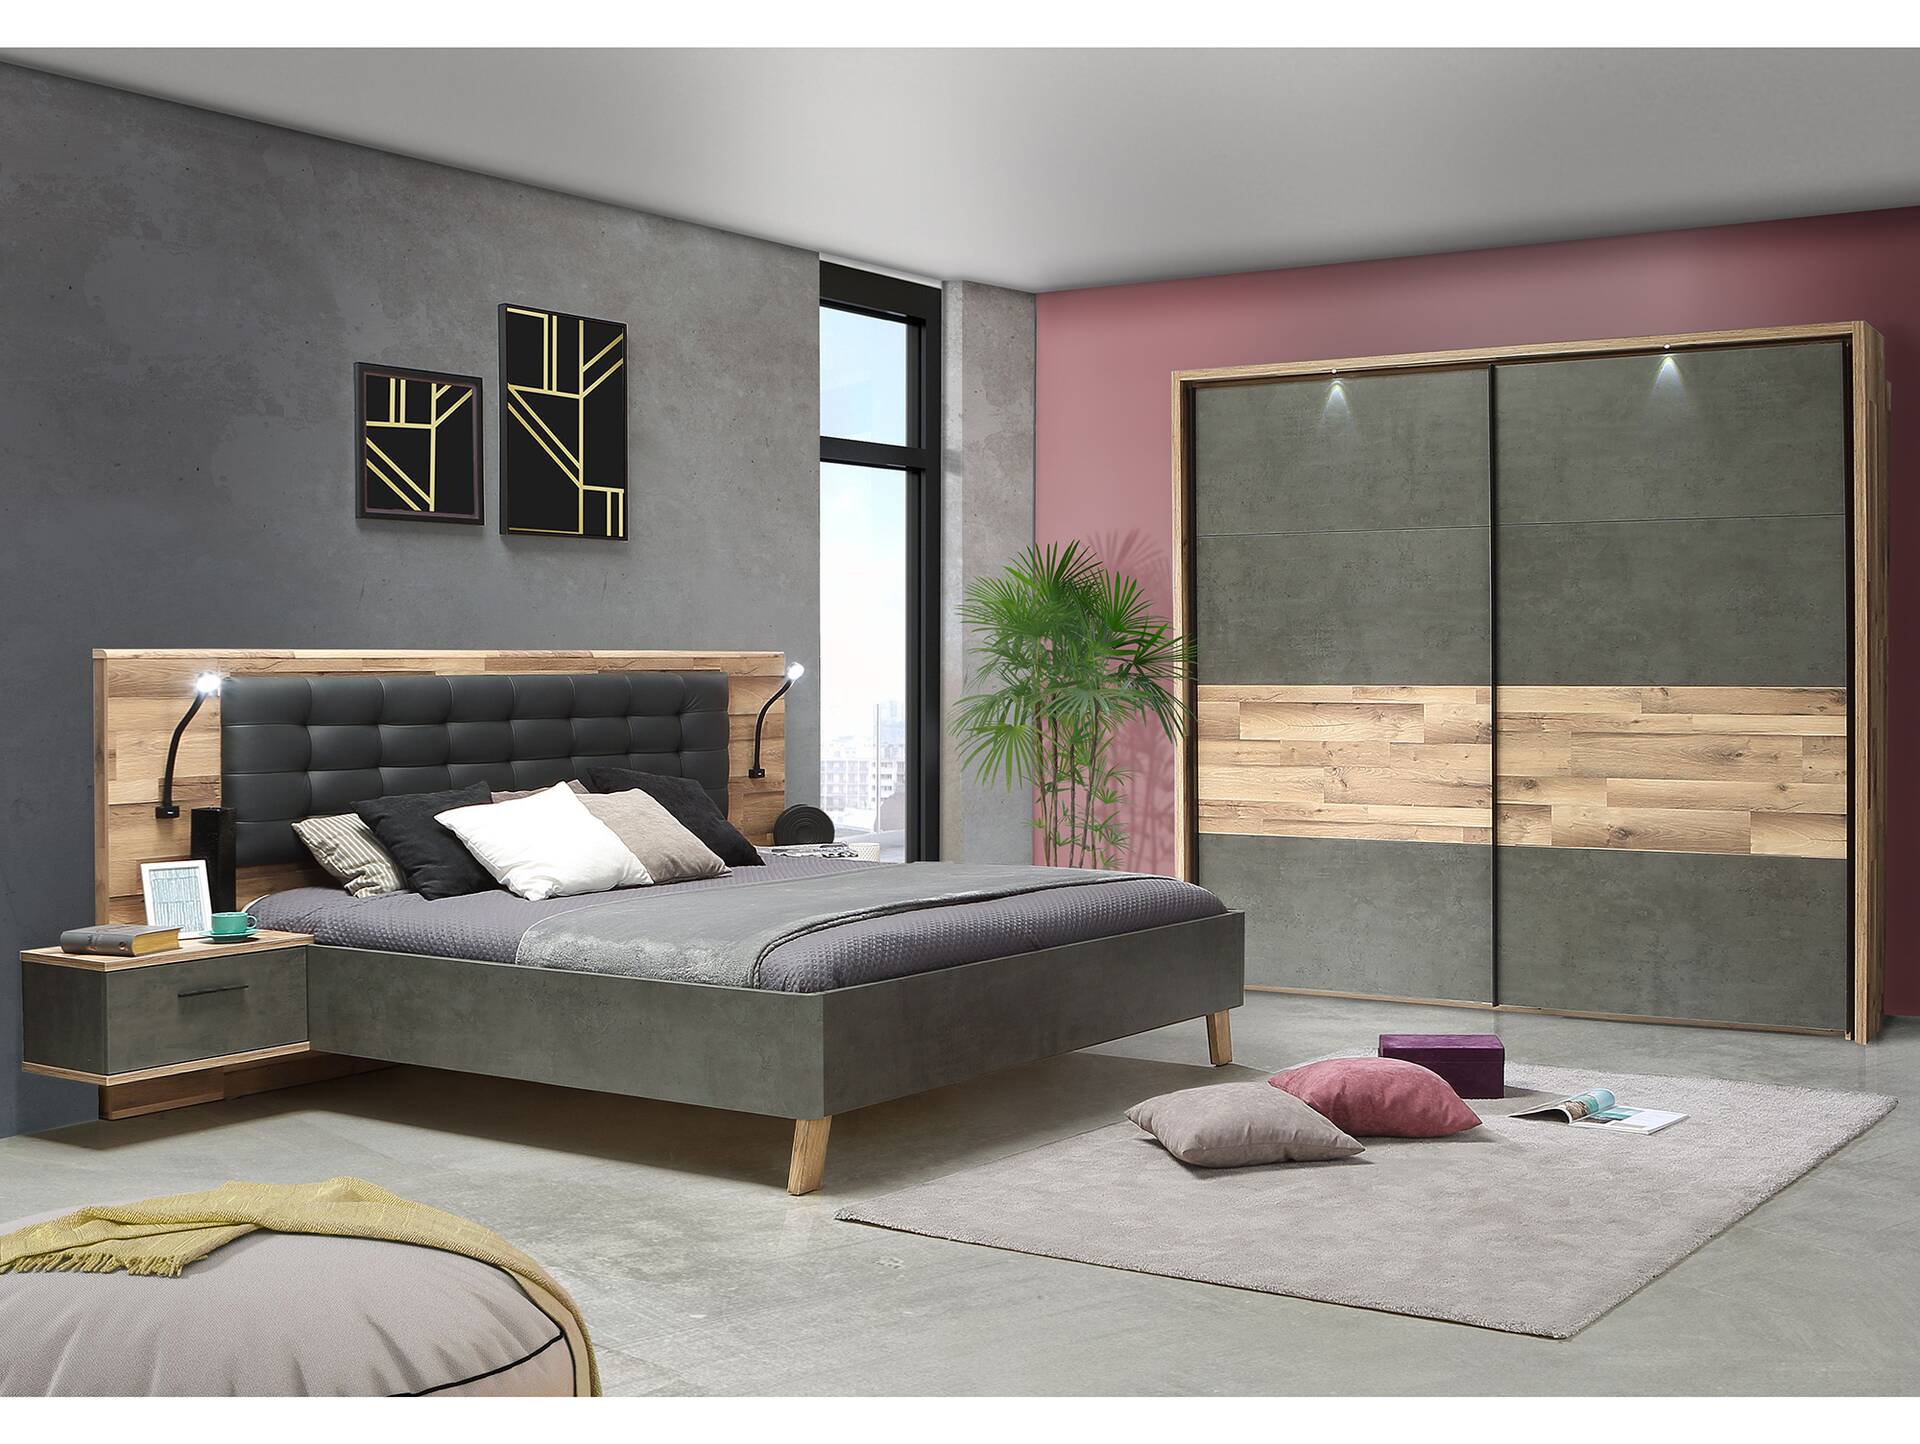 RICCANO Komplett-Schlafzimmer II, Material Dekorspanplatte, stabeichefarbig/grau 